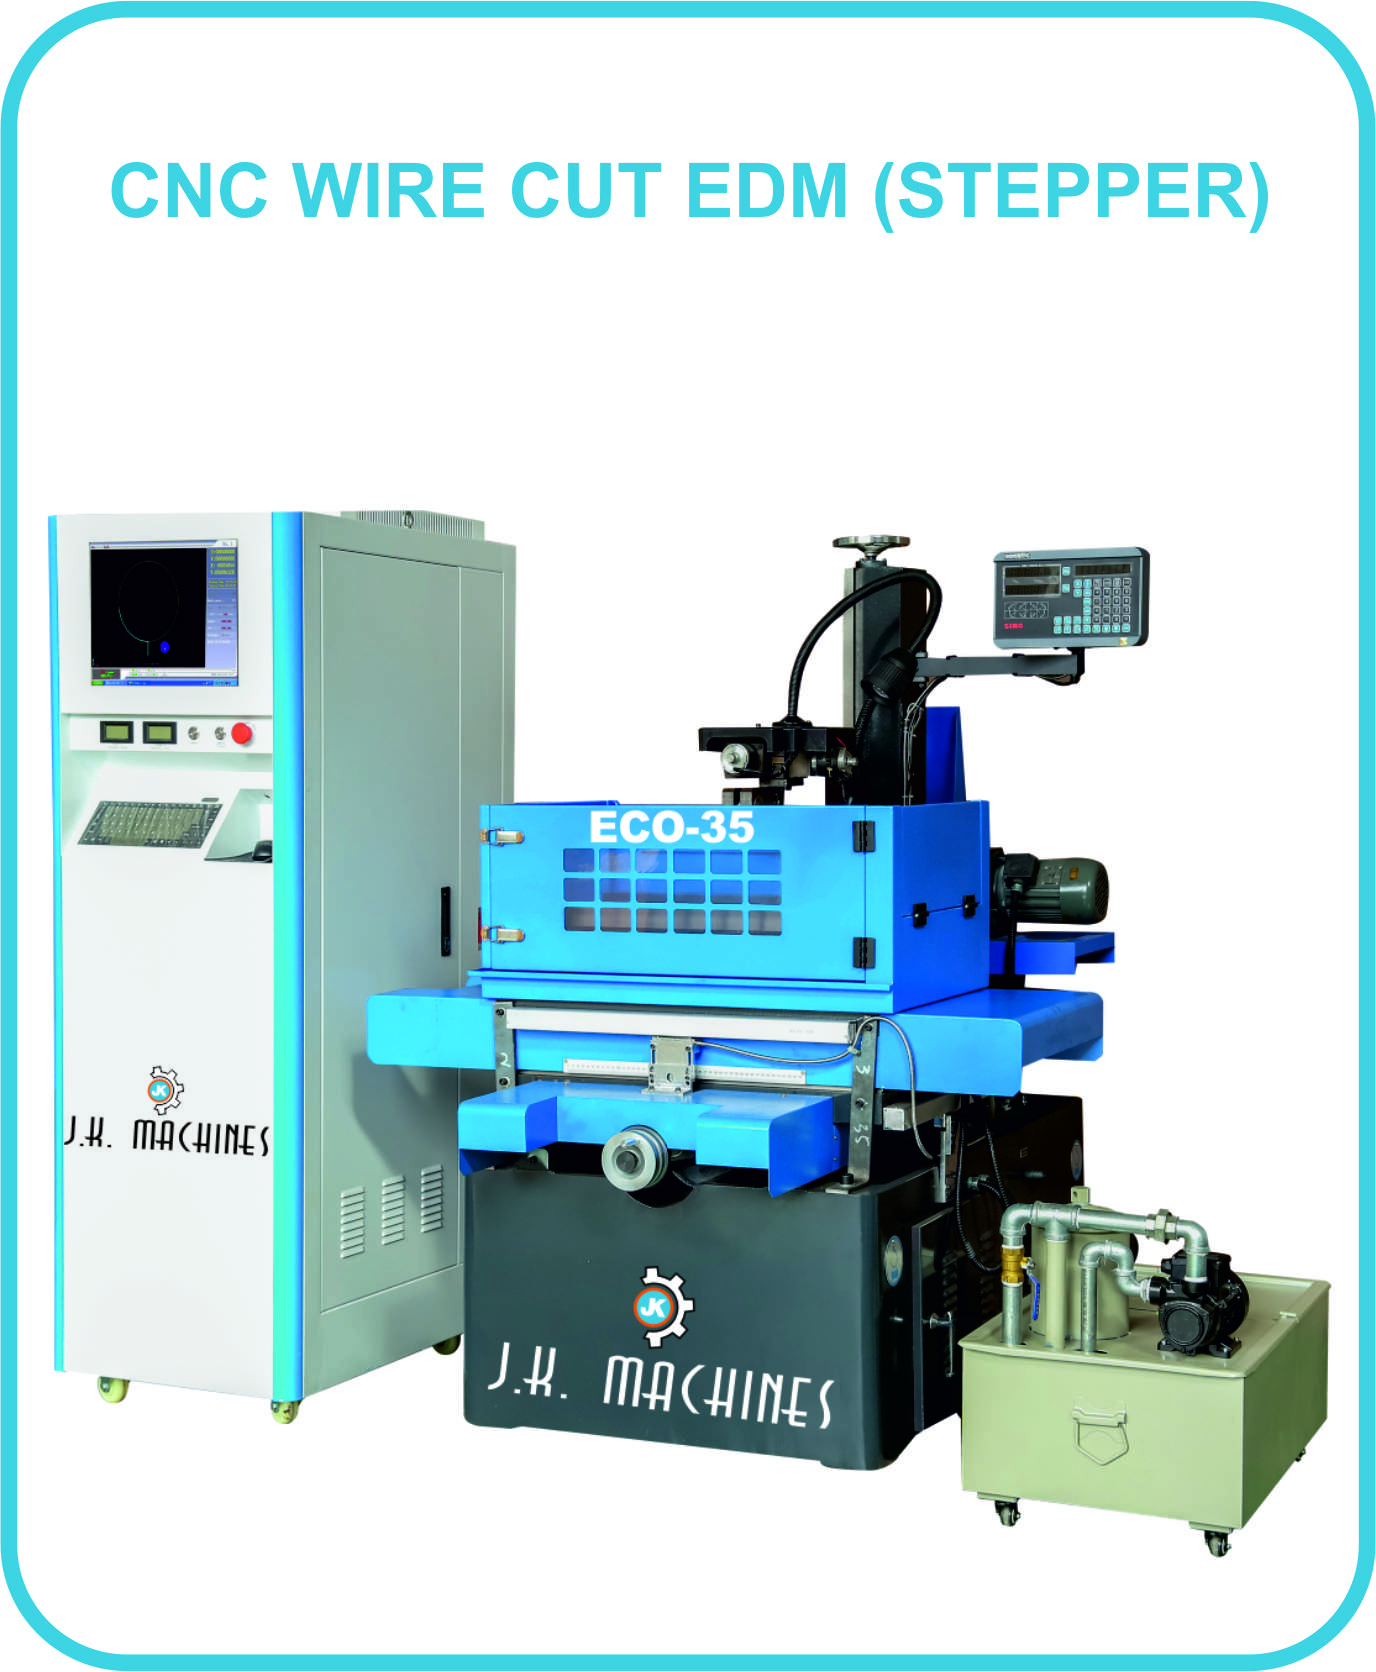 CNC Wirecut (DC Stepper)